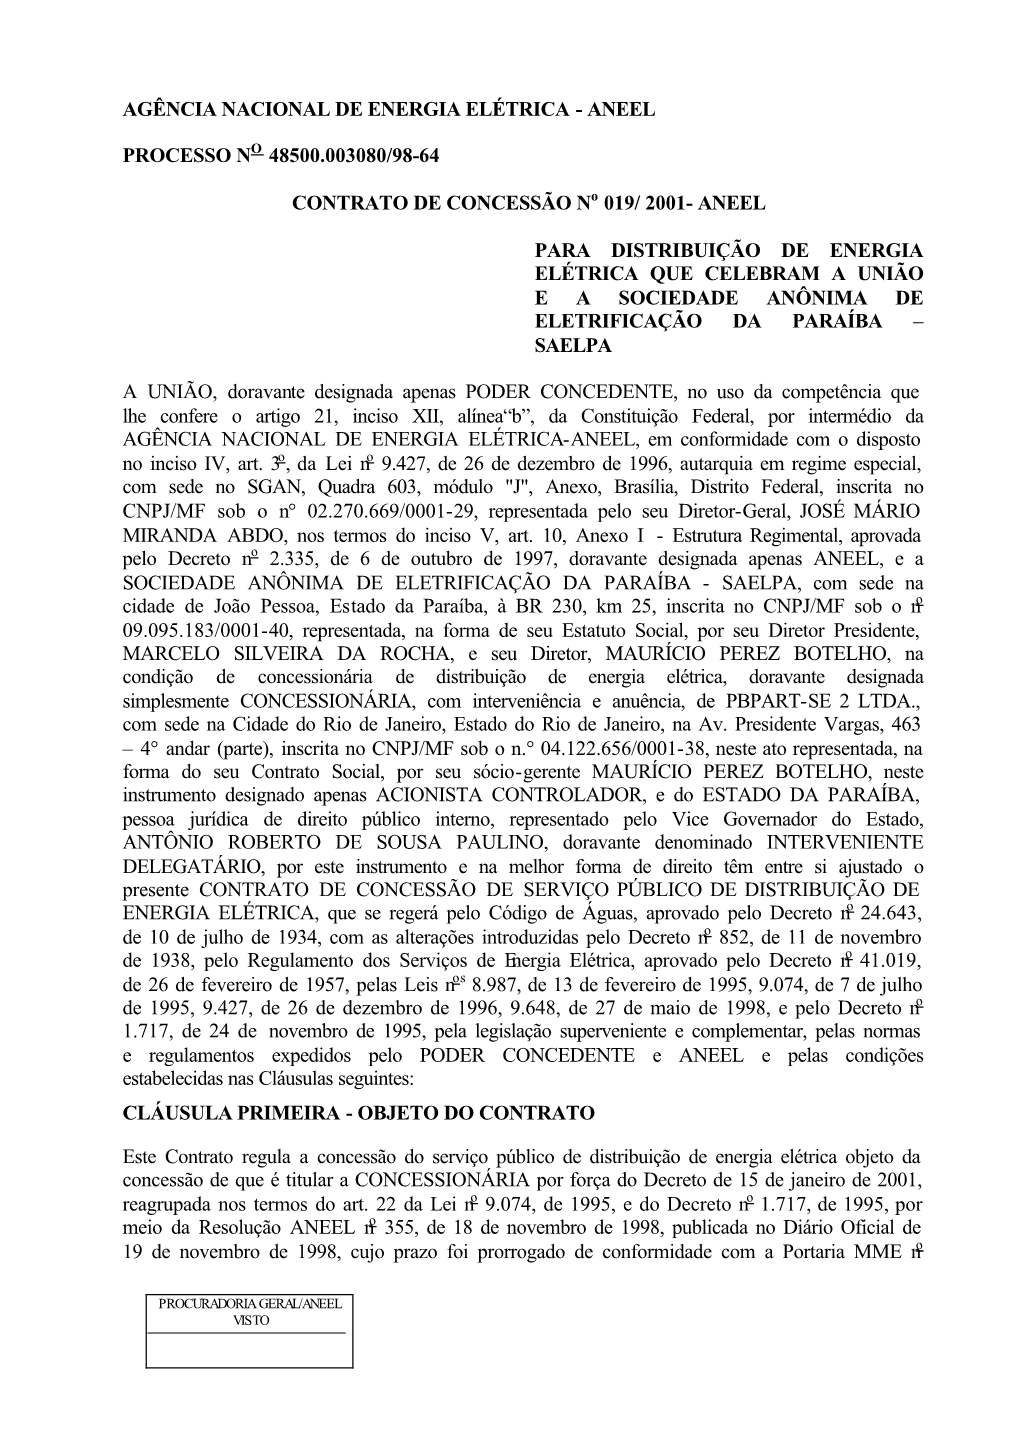 CONTRATO DE CONCESSÃO No 019/ 2001- ANEEL